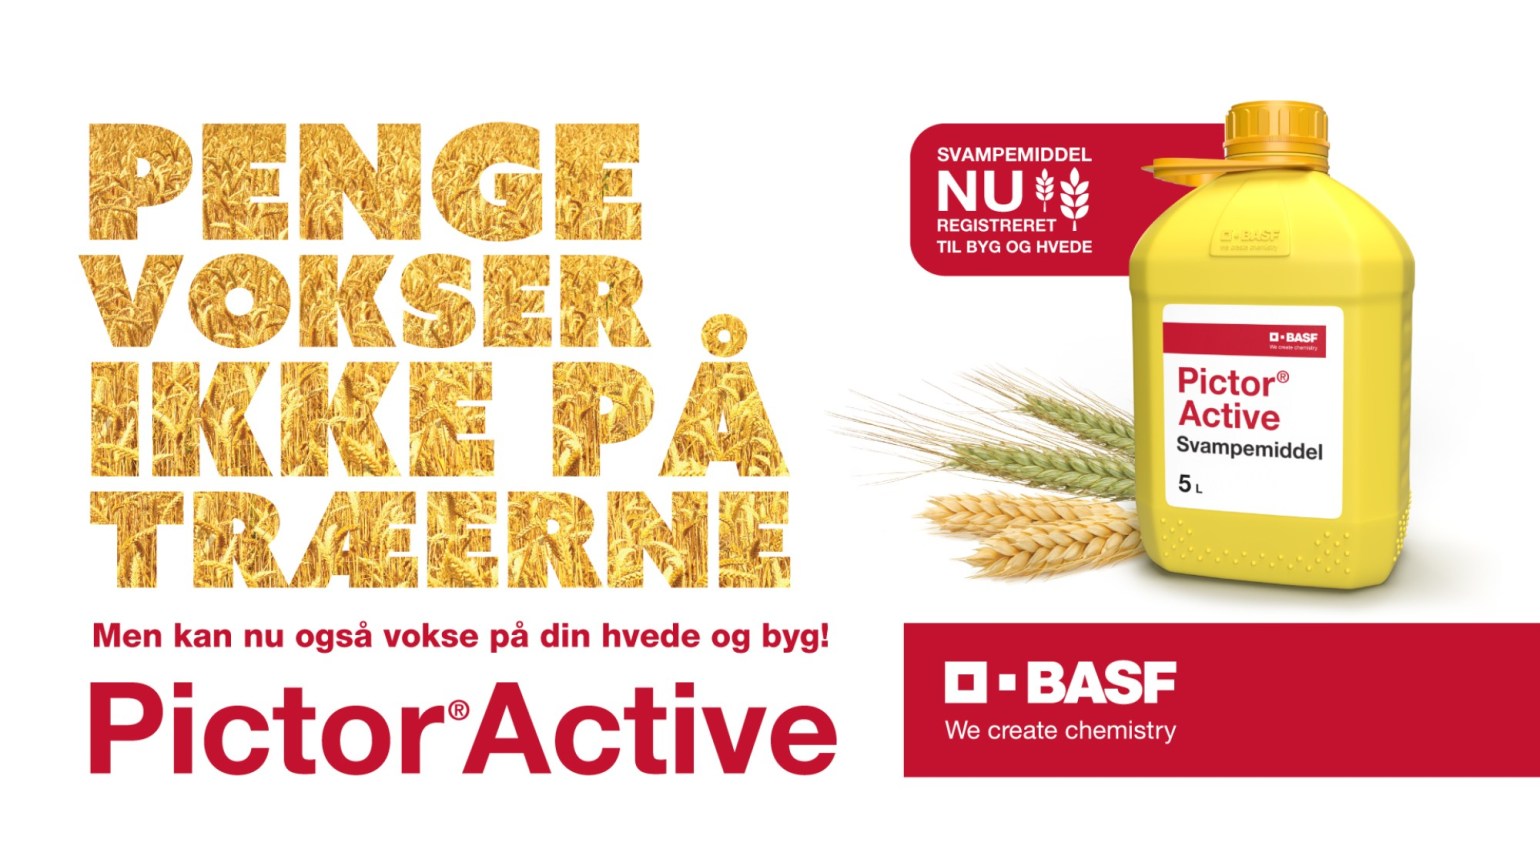 Pictor® Active er et nyt i byg og hvede der passer perfekt til behandling - BASF Agricultural Solutions Danmark